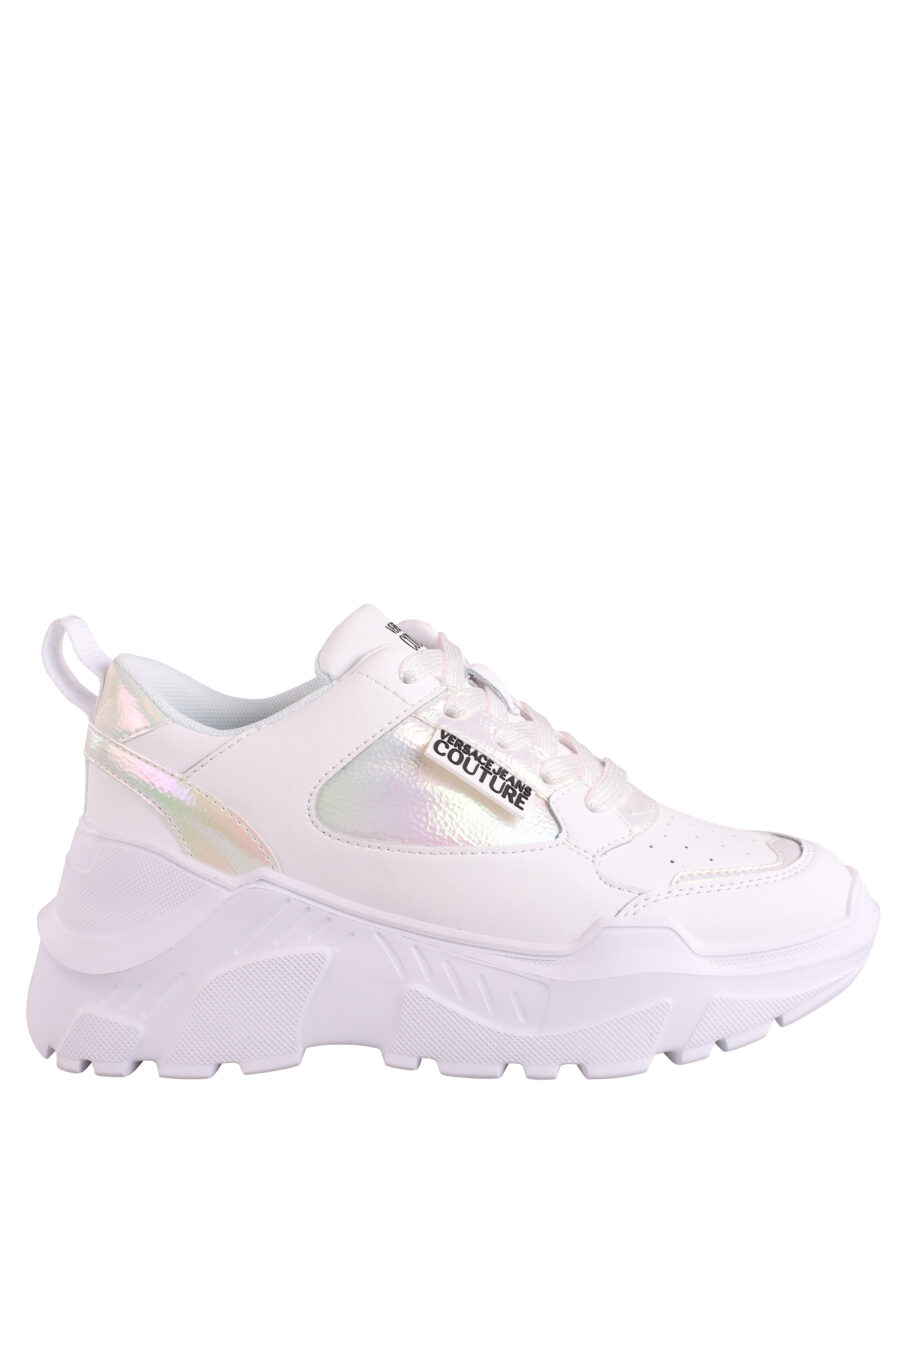 Zapatillas blancas con detalles en holograma y plataforma - IMG 9011